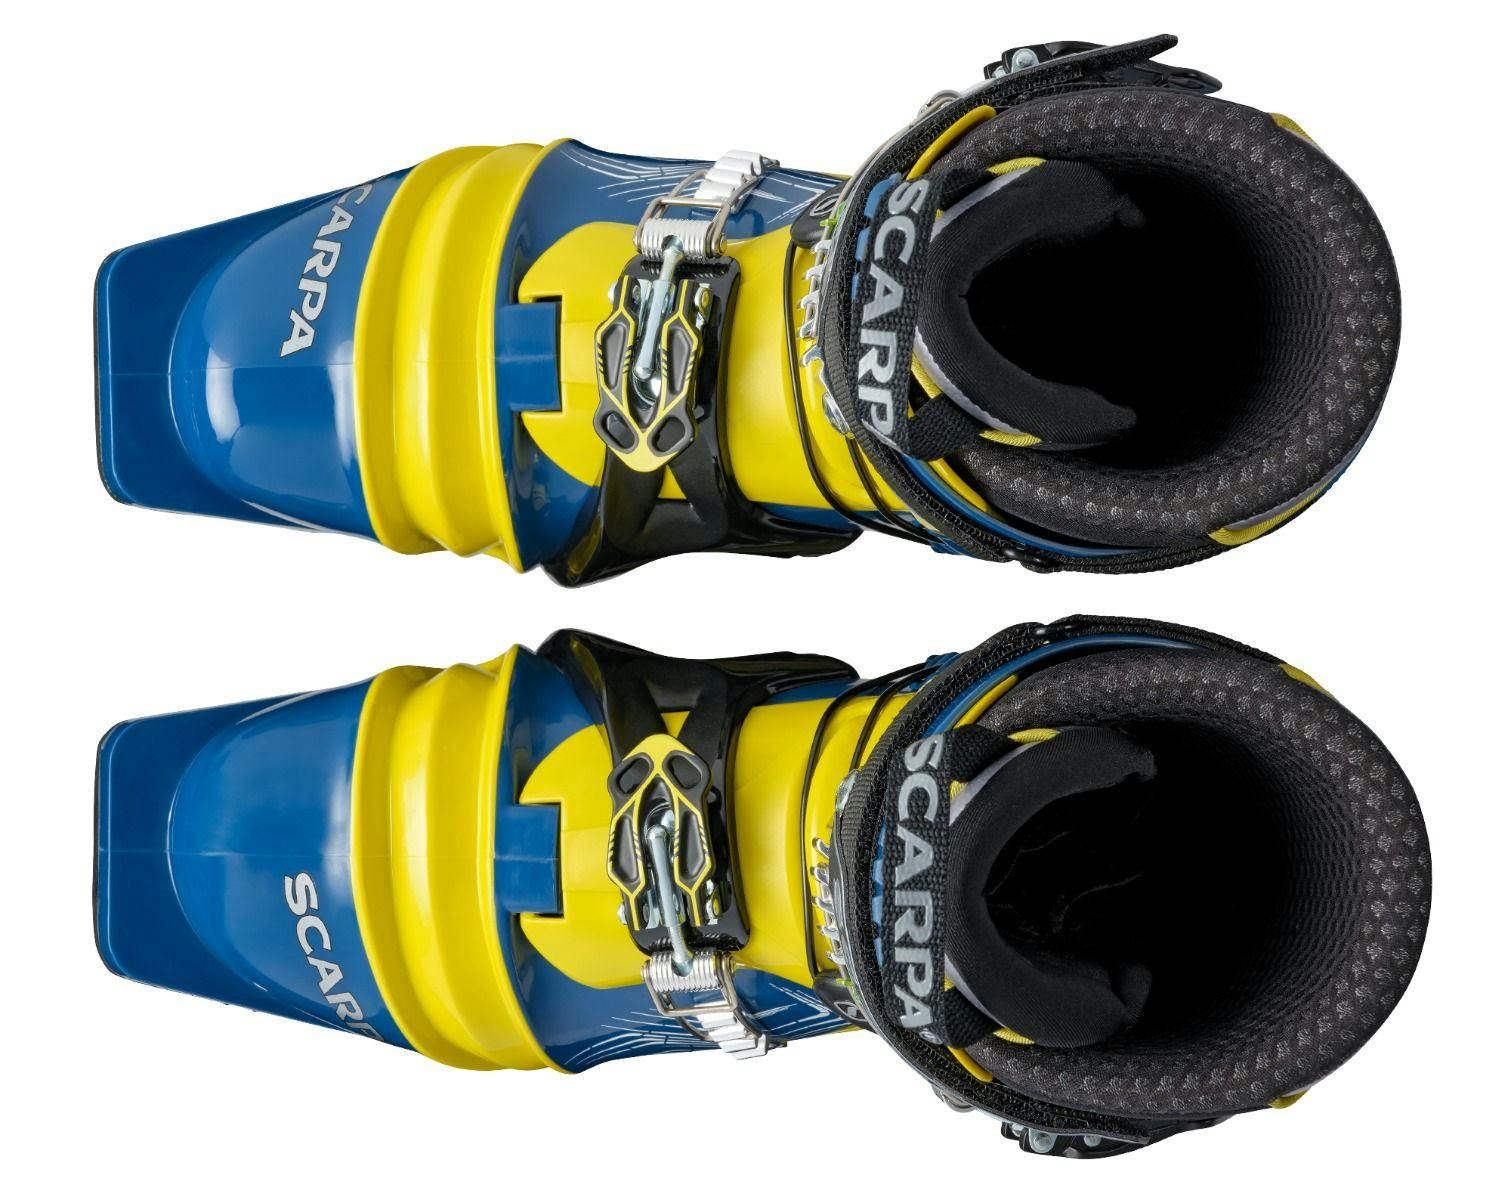 Scarpa T2 ECO Telemark 95 Ski Boots · 2022